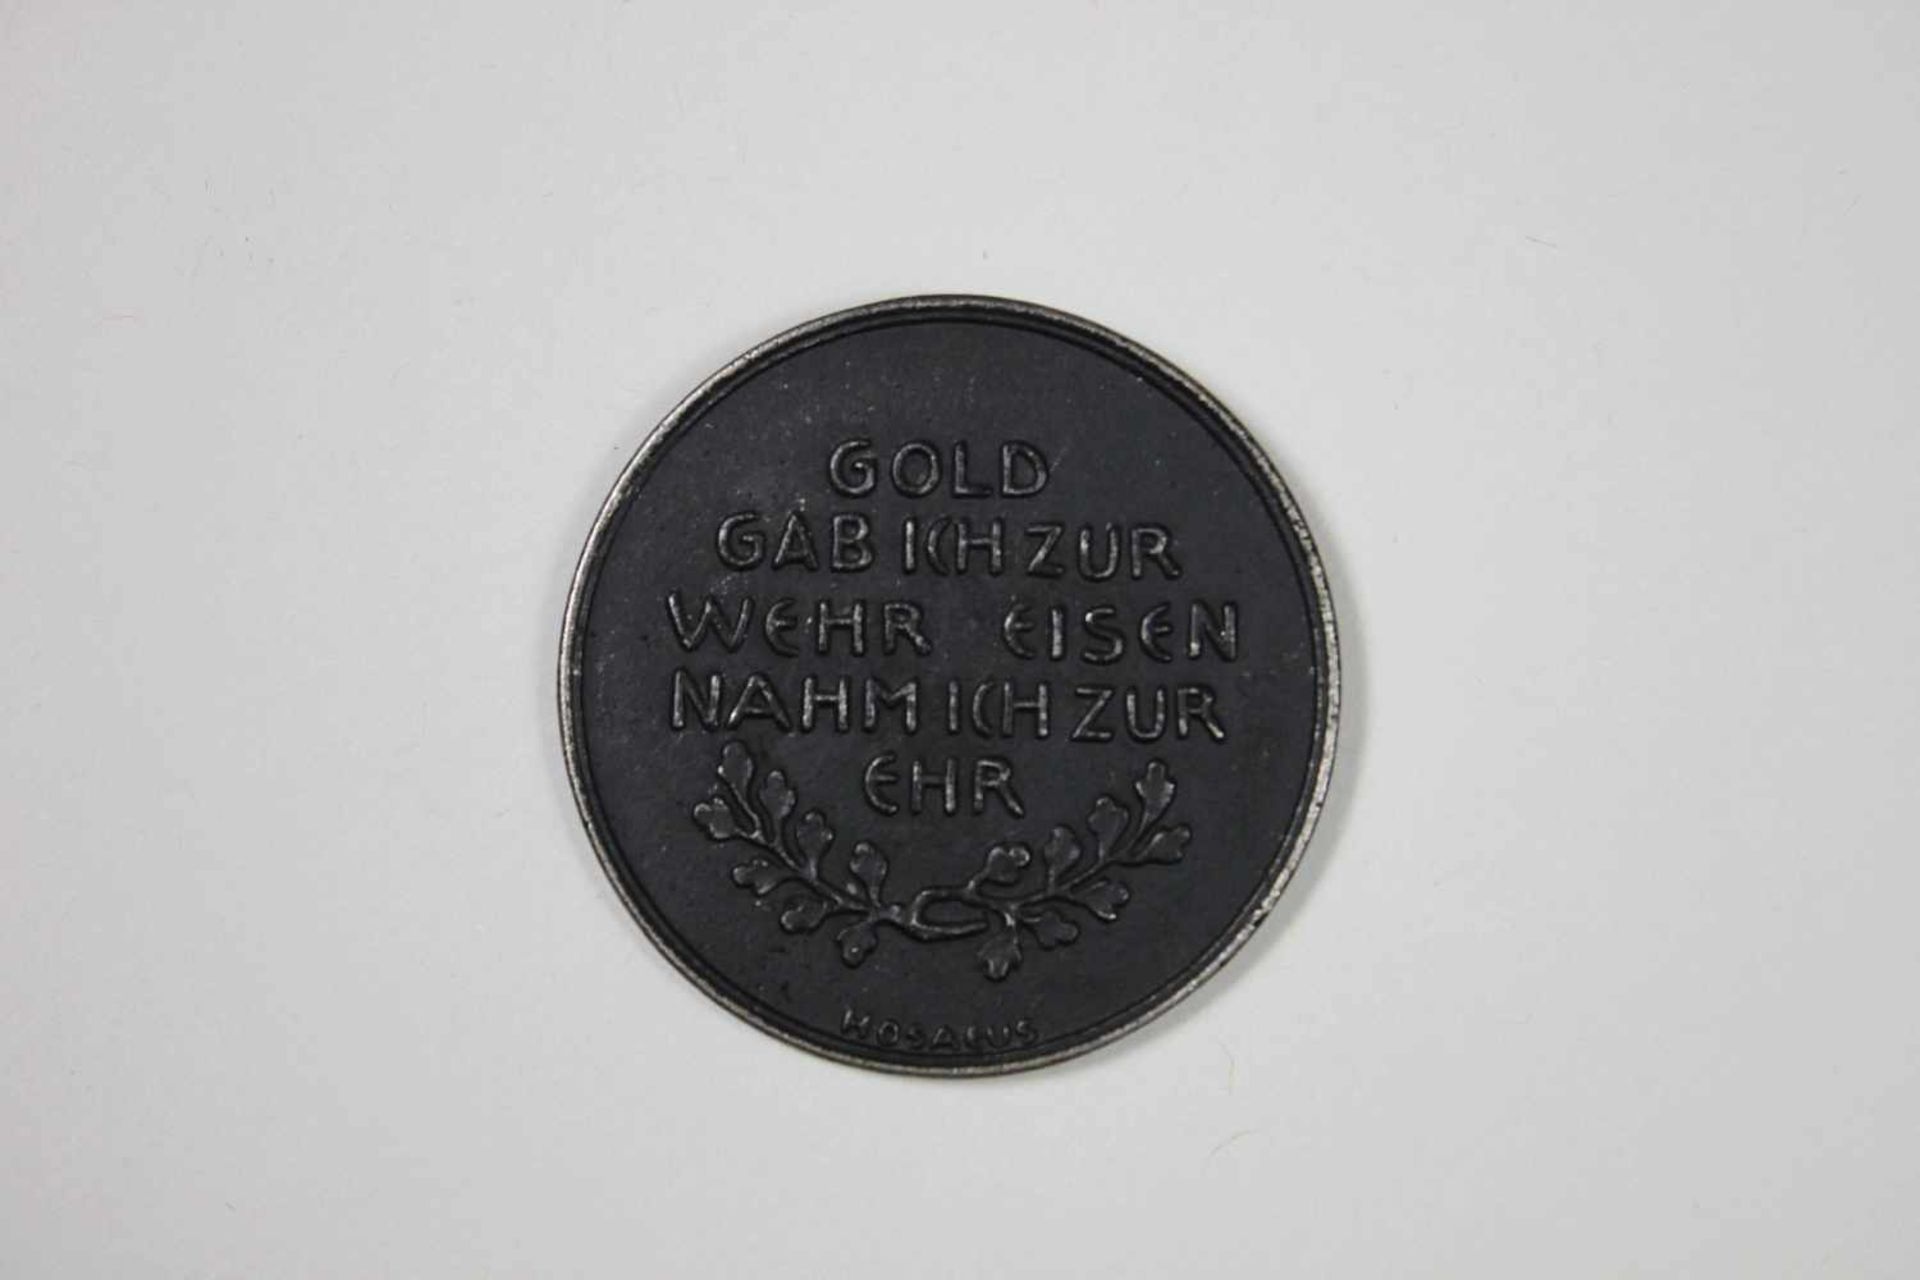 Geschwärzte Medaille: In eiserner Zeit 1916, Rückseite: Gold gab ich zur Wehr Eisen nahm ich zur - Bild 2 aus 2